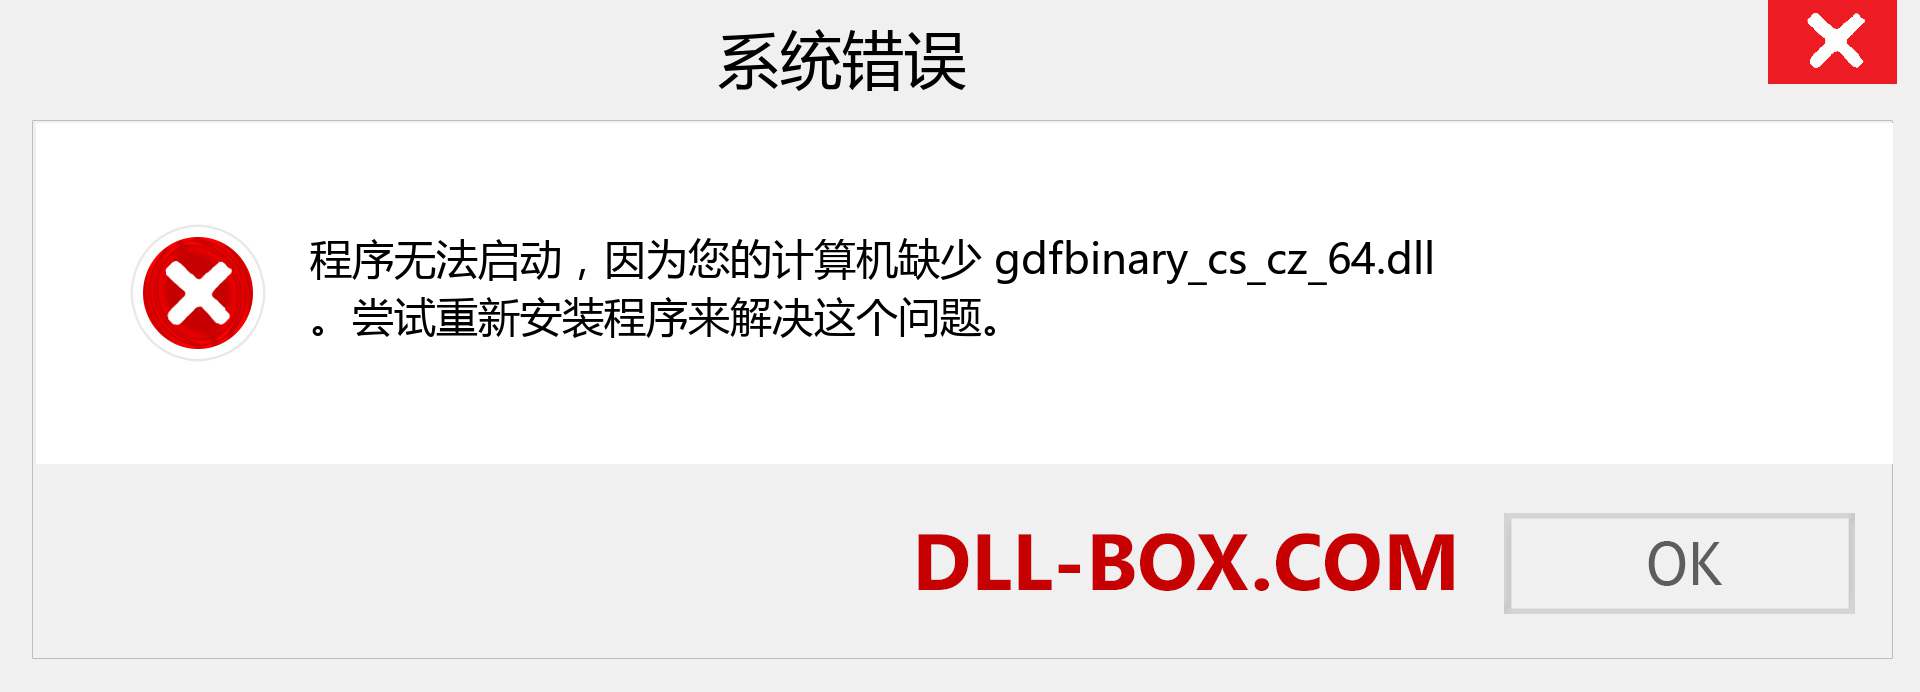 gdfbinary_cs_cz_64.dll 文件丢失？。 适用于 Windows 7、8、10 的下载 - 修复 Windows、照片、图像上的 gdfbinary_cs_cz_64 dll 丢失错误